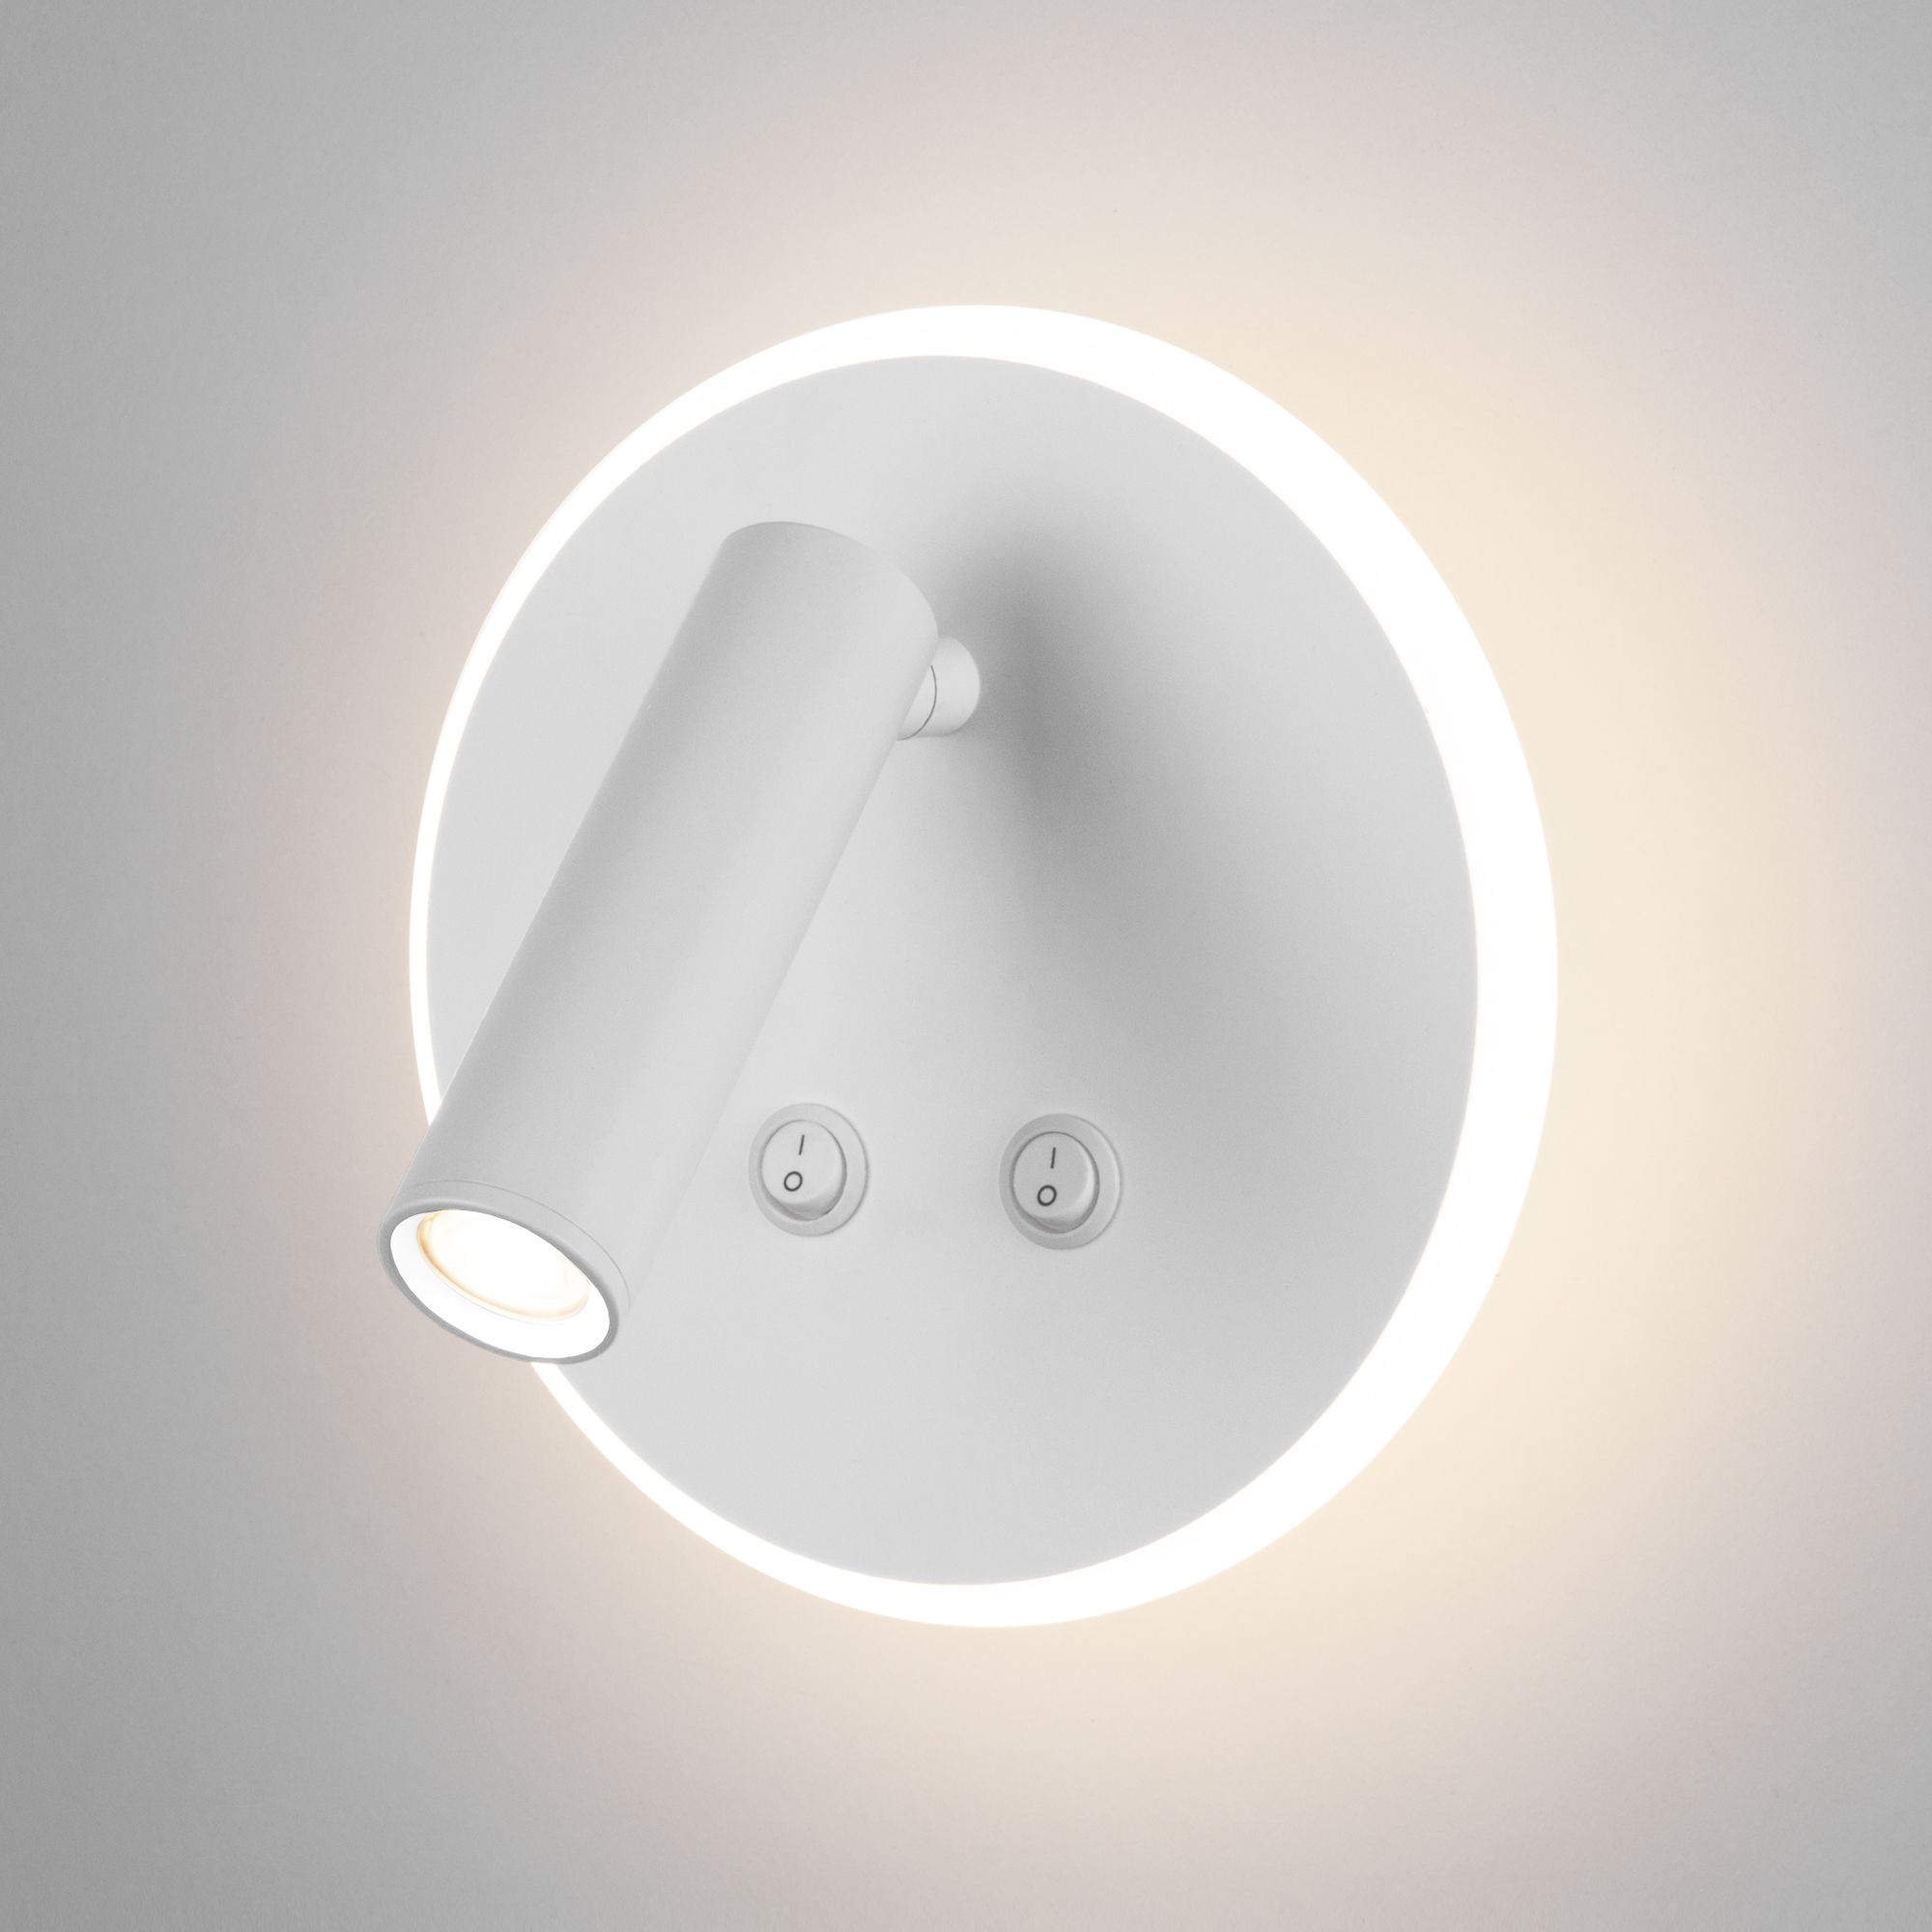 Настенный светодиодный светильник Tera LED MRL LED 1014 белый Elektrostandard